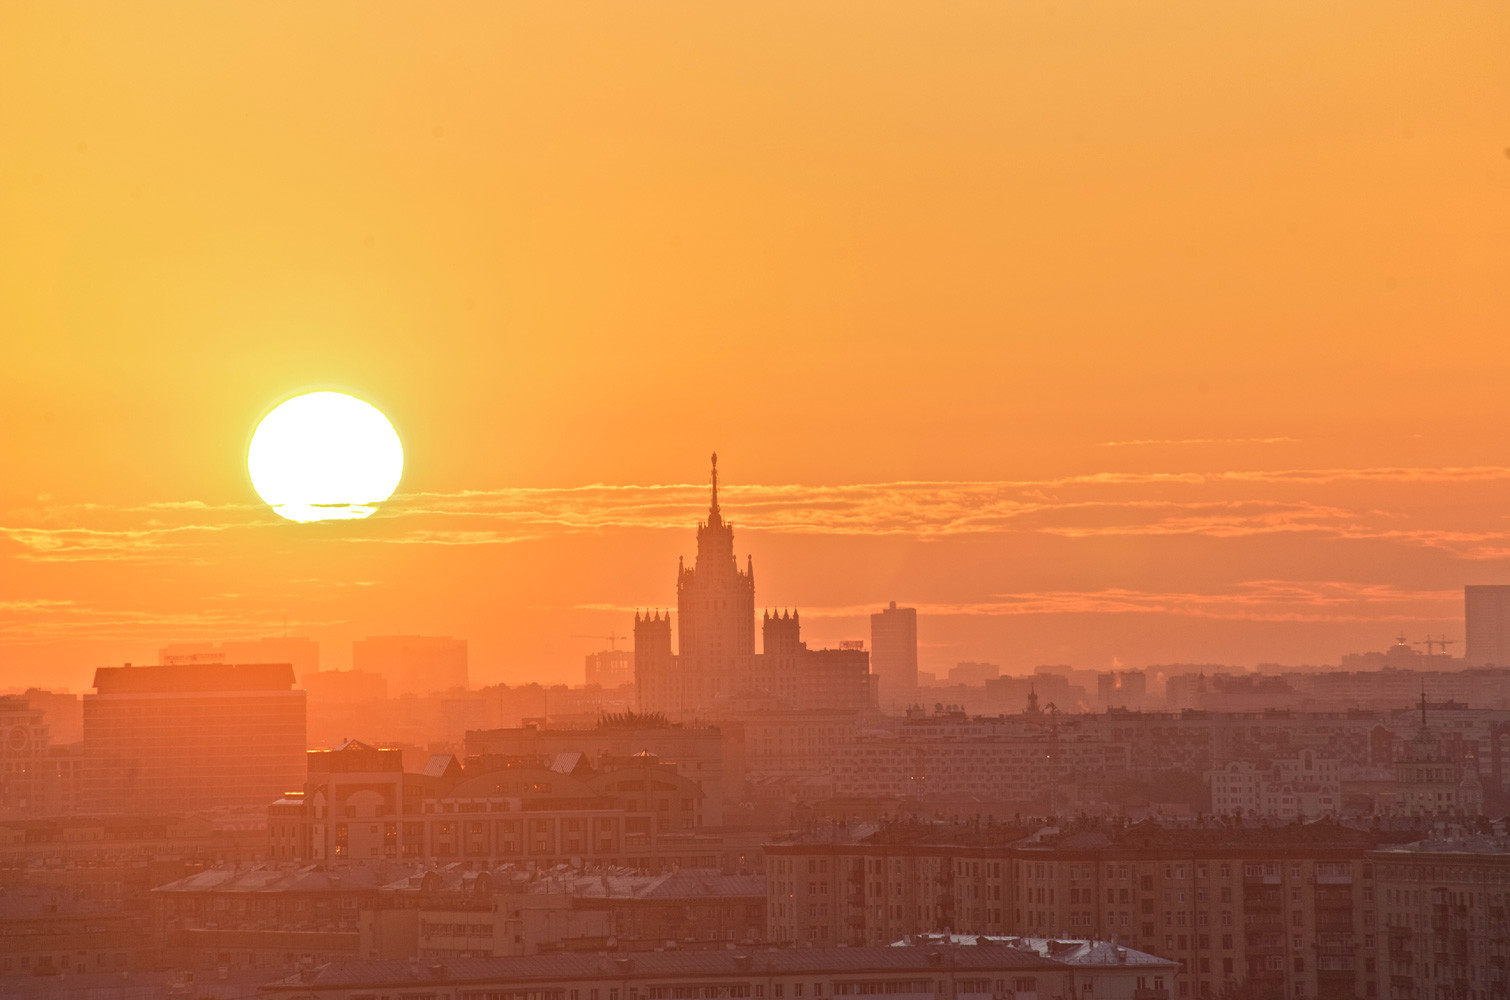 Не май месяц: когда в Москву вернётся весна